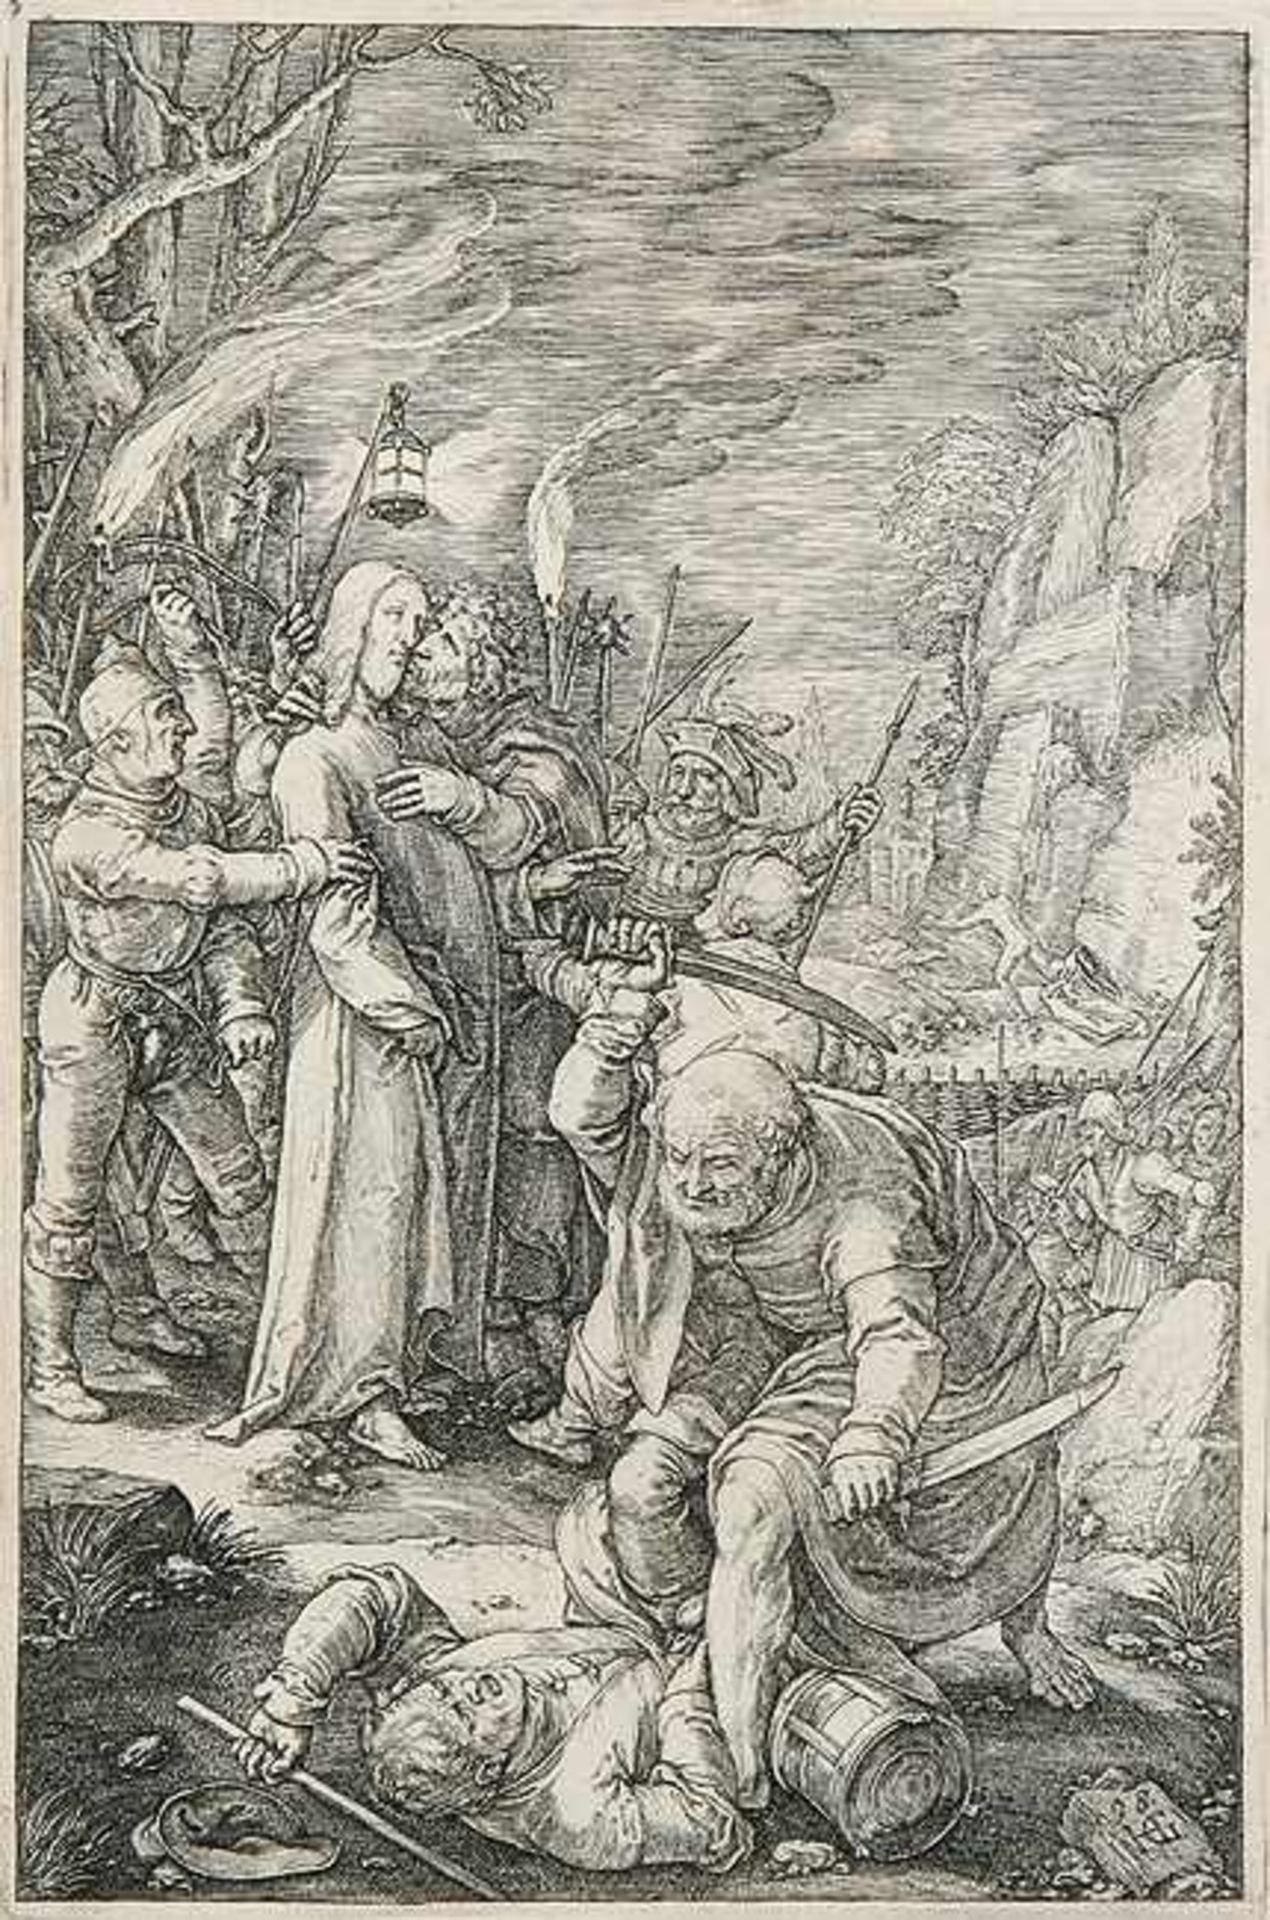 HENDRICK GOLTZIUS Mühlbrecht 1558 - 1617 HaarlemDer Verrat an Christus. Kupferstich aus der Folge „